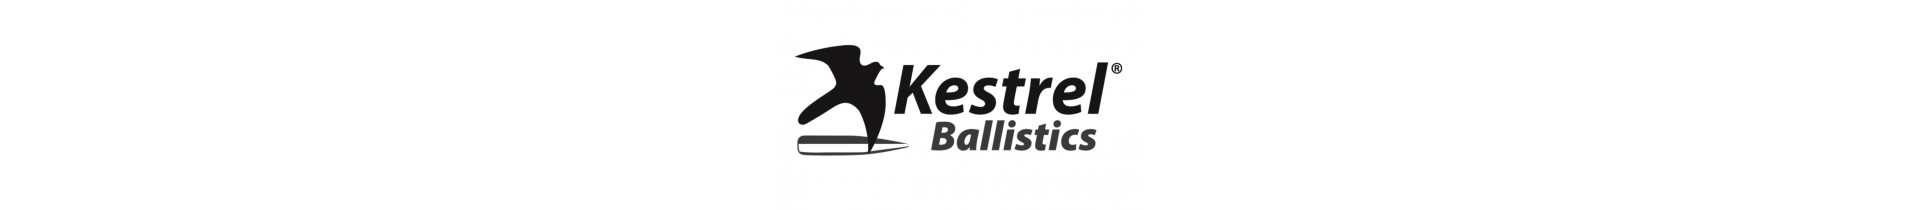 Retrouvez sur www.tactirshop.fr toute la gamme des produits Kestrel Ballistics